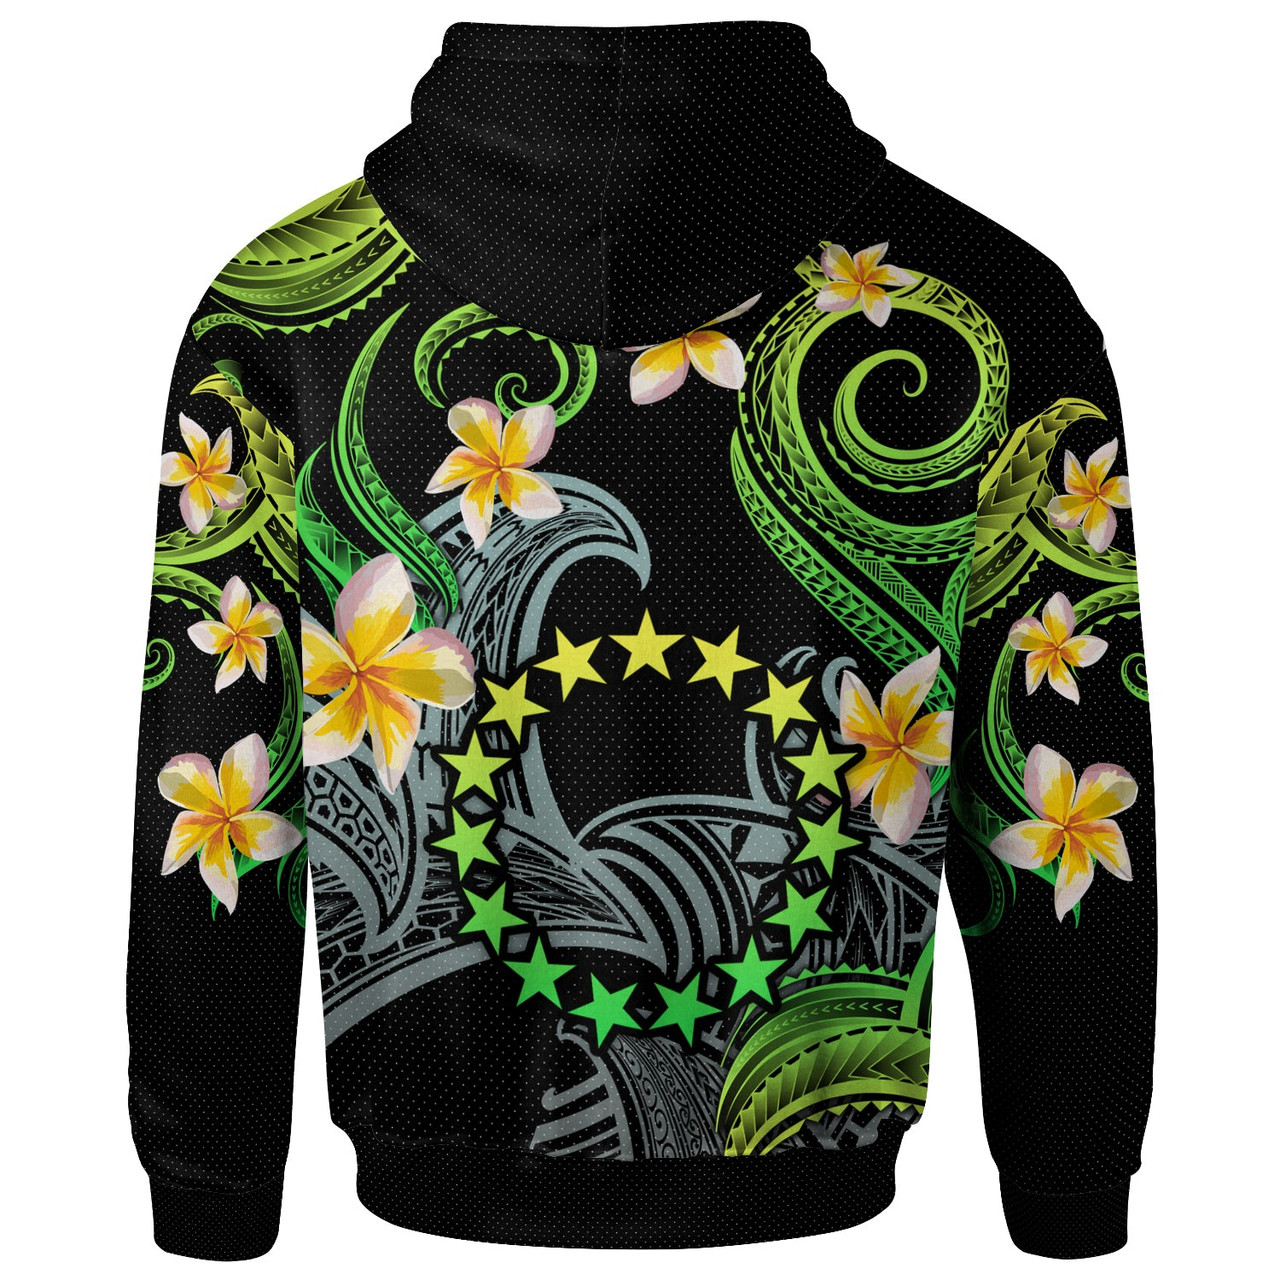 Cook Islands Hoodie - Custom Personalised Polynesian Waves with Plumeria Flowers (Green)